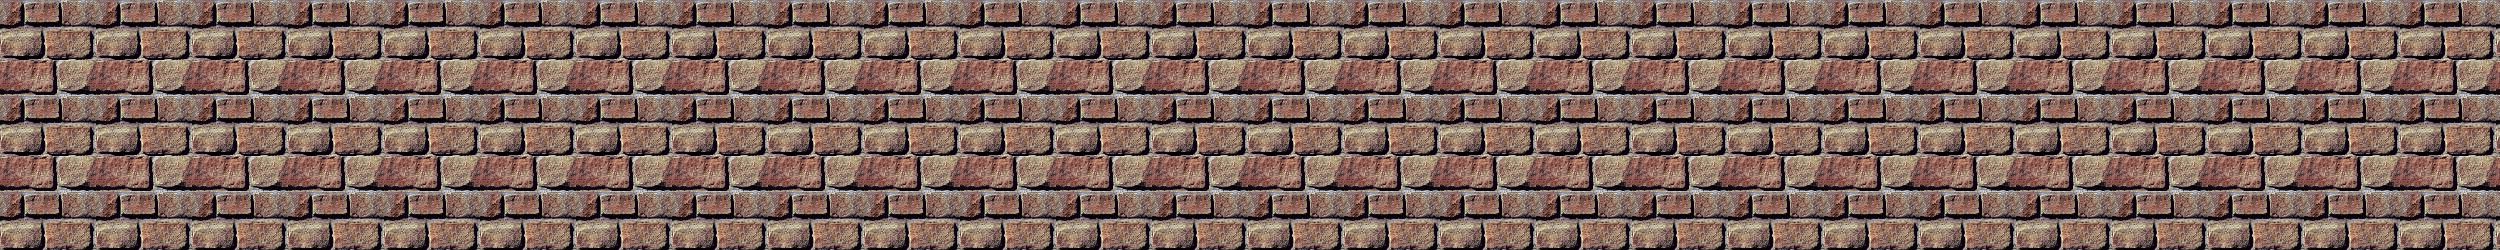 Bricks divider